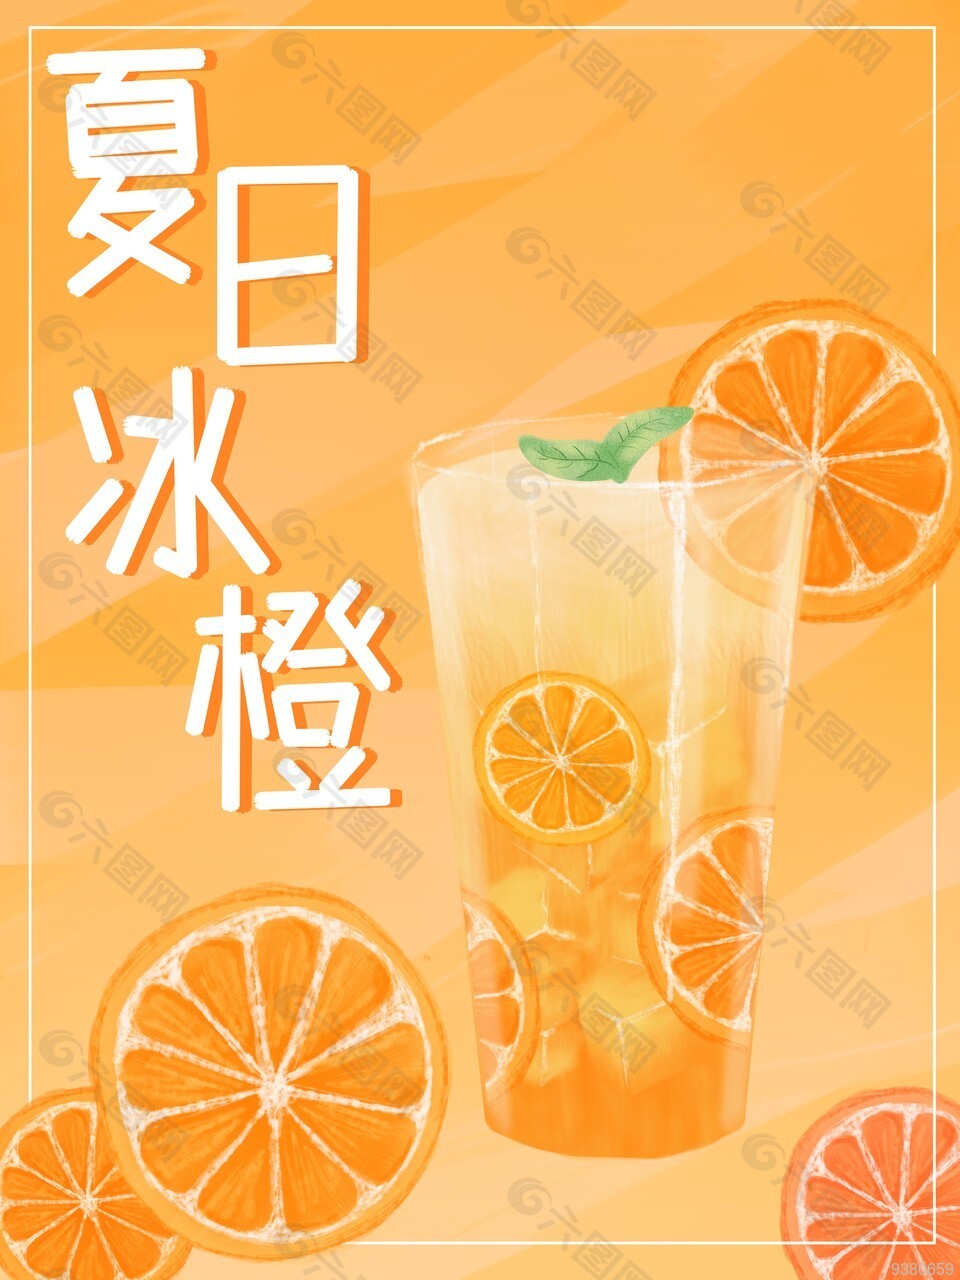 夏日清凉饮品宣传海报